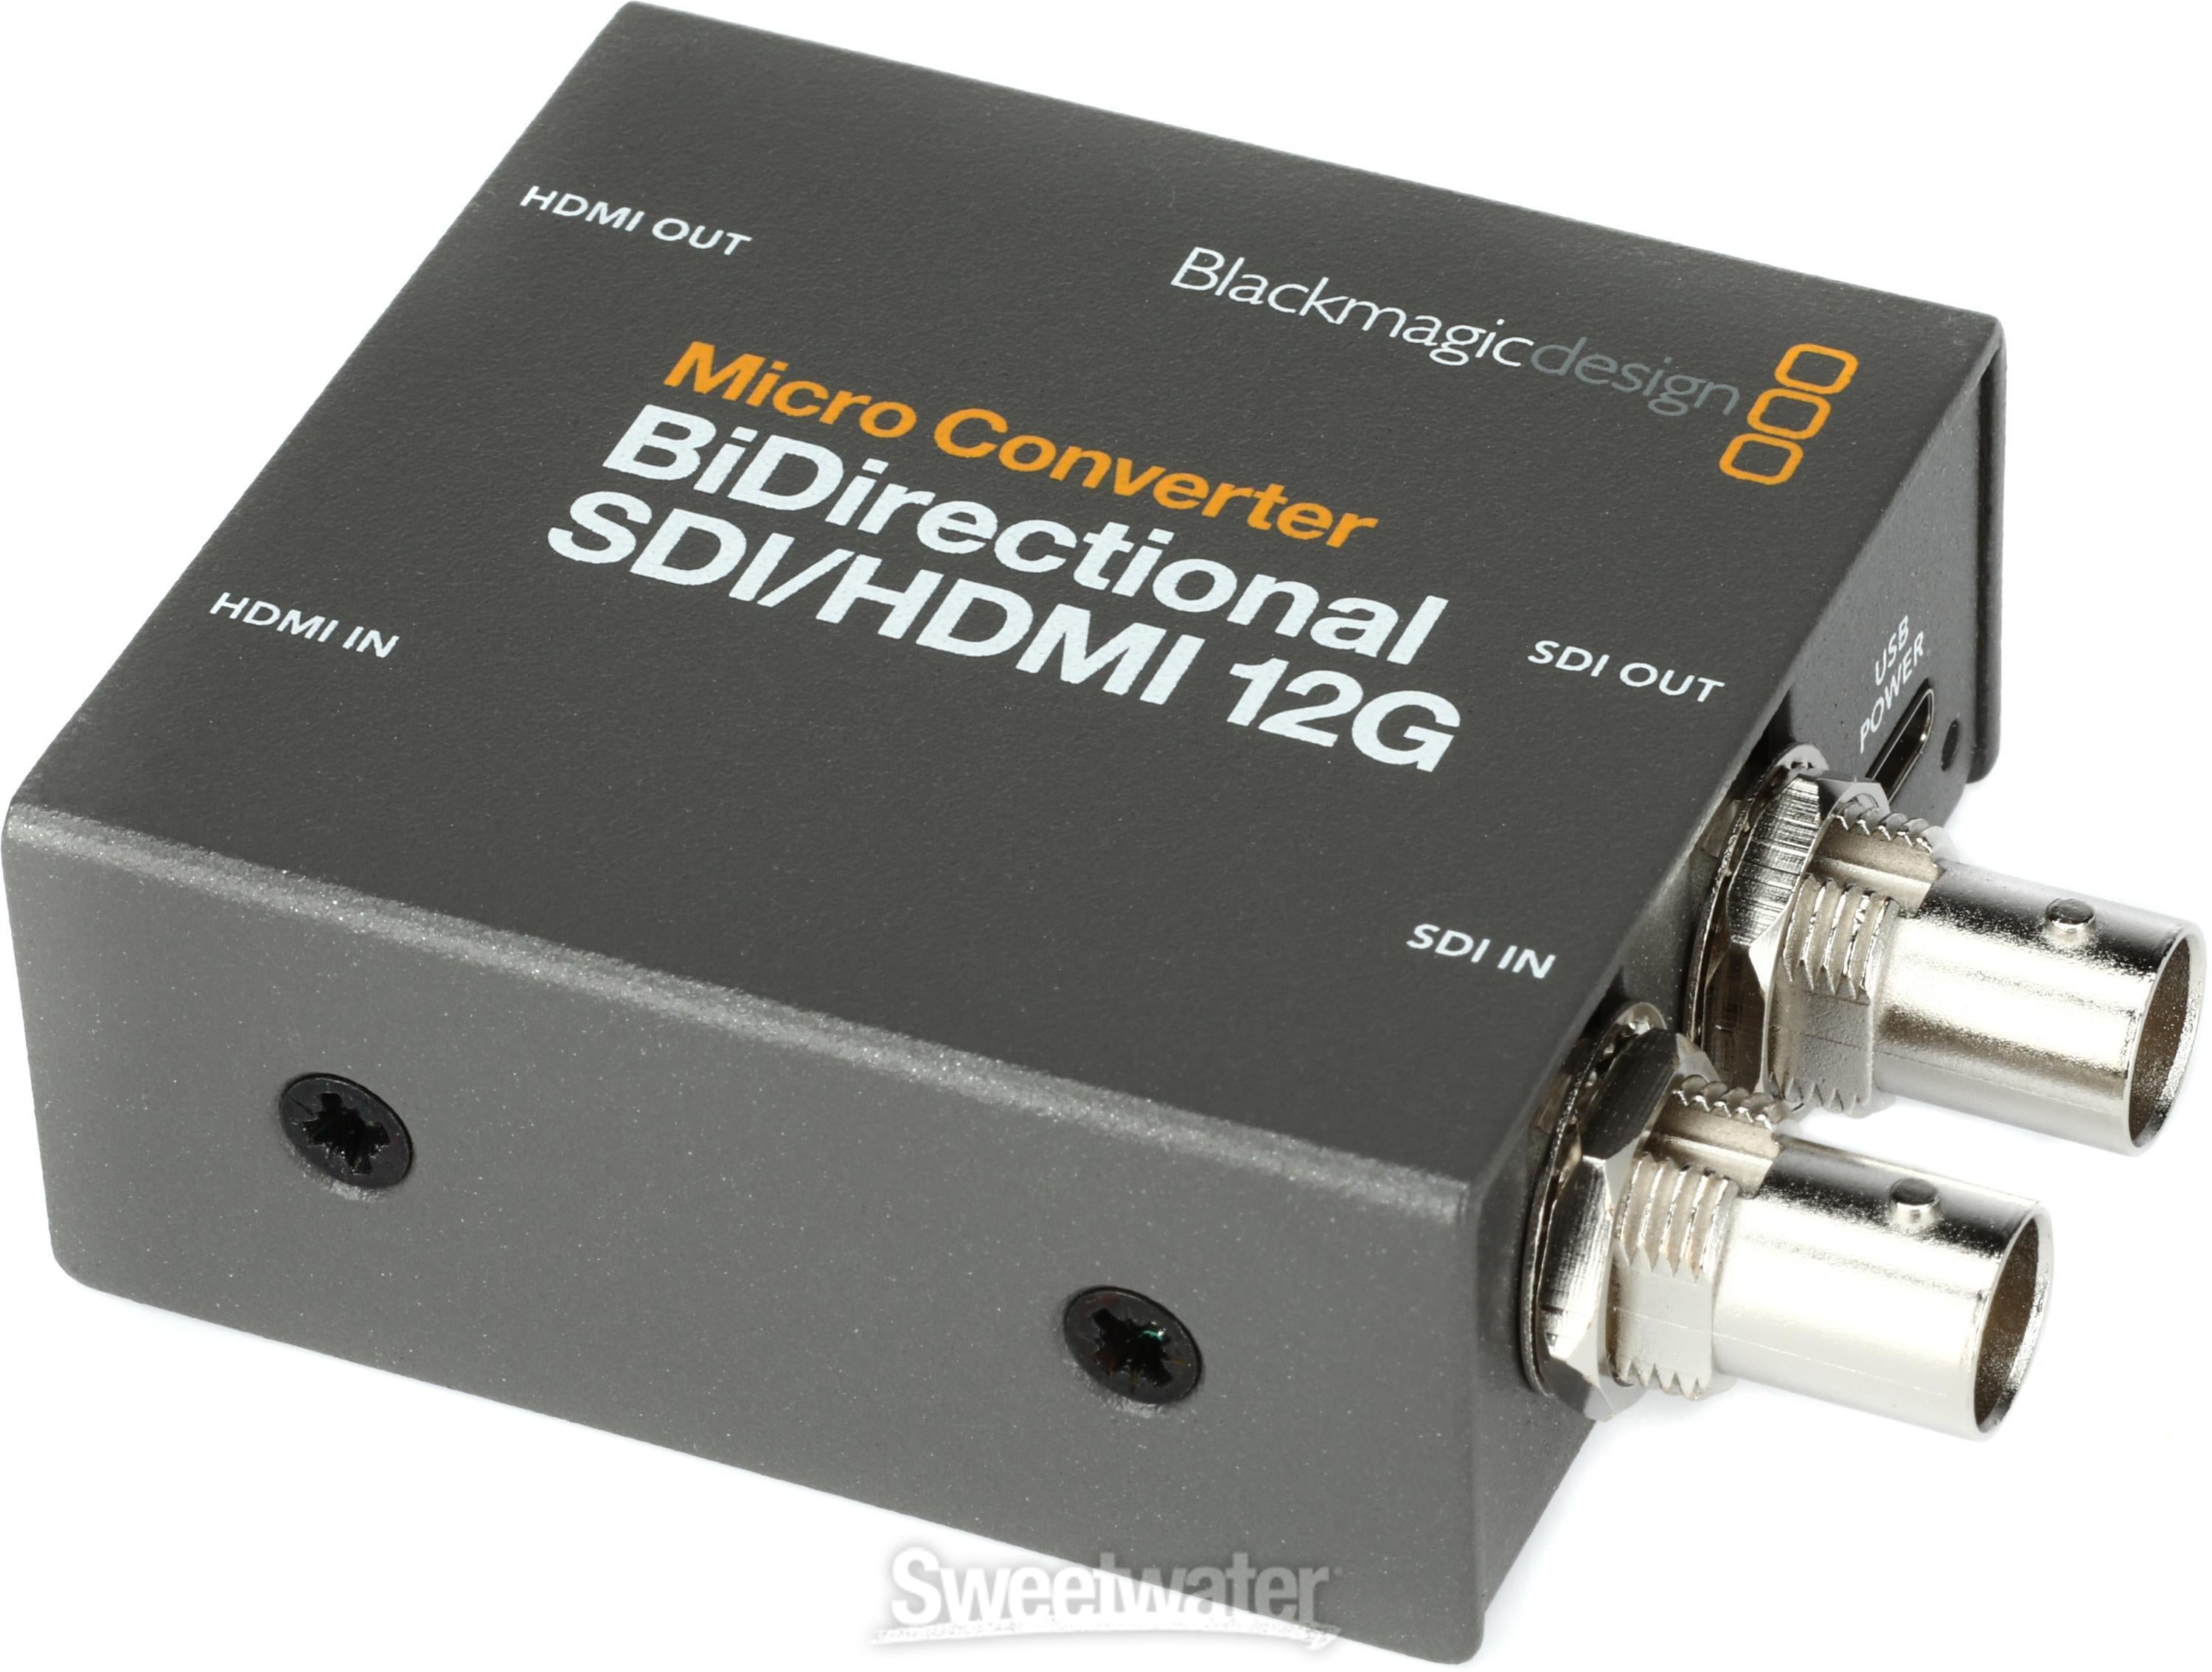 Blackmagic Design Bidirectional SDI/HDMI 12G Micro Converter